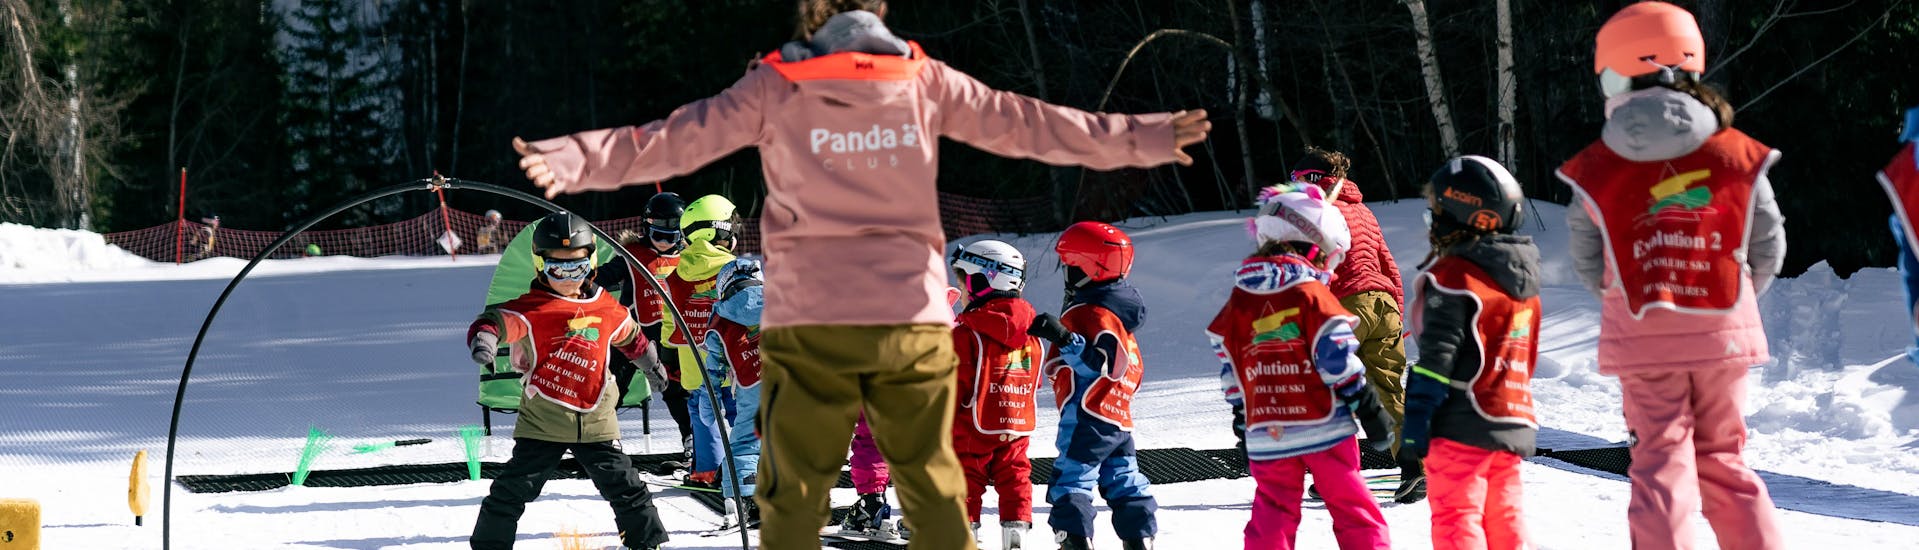 Clases de esquí para niños (3-5 años) en Grands Montets.